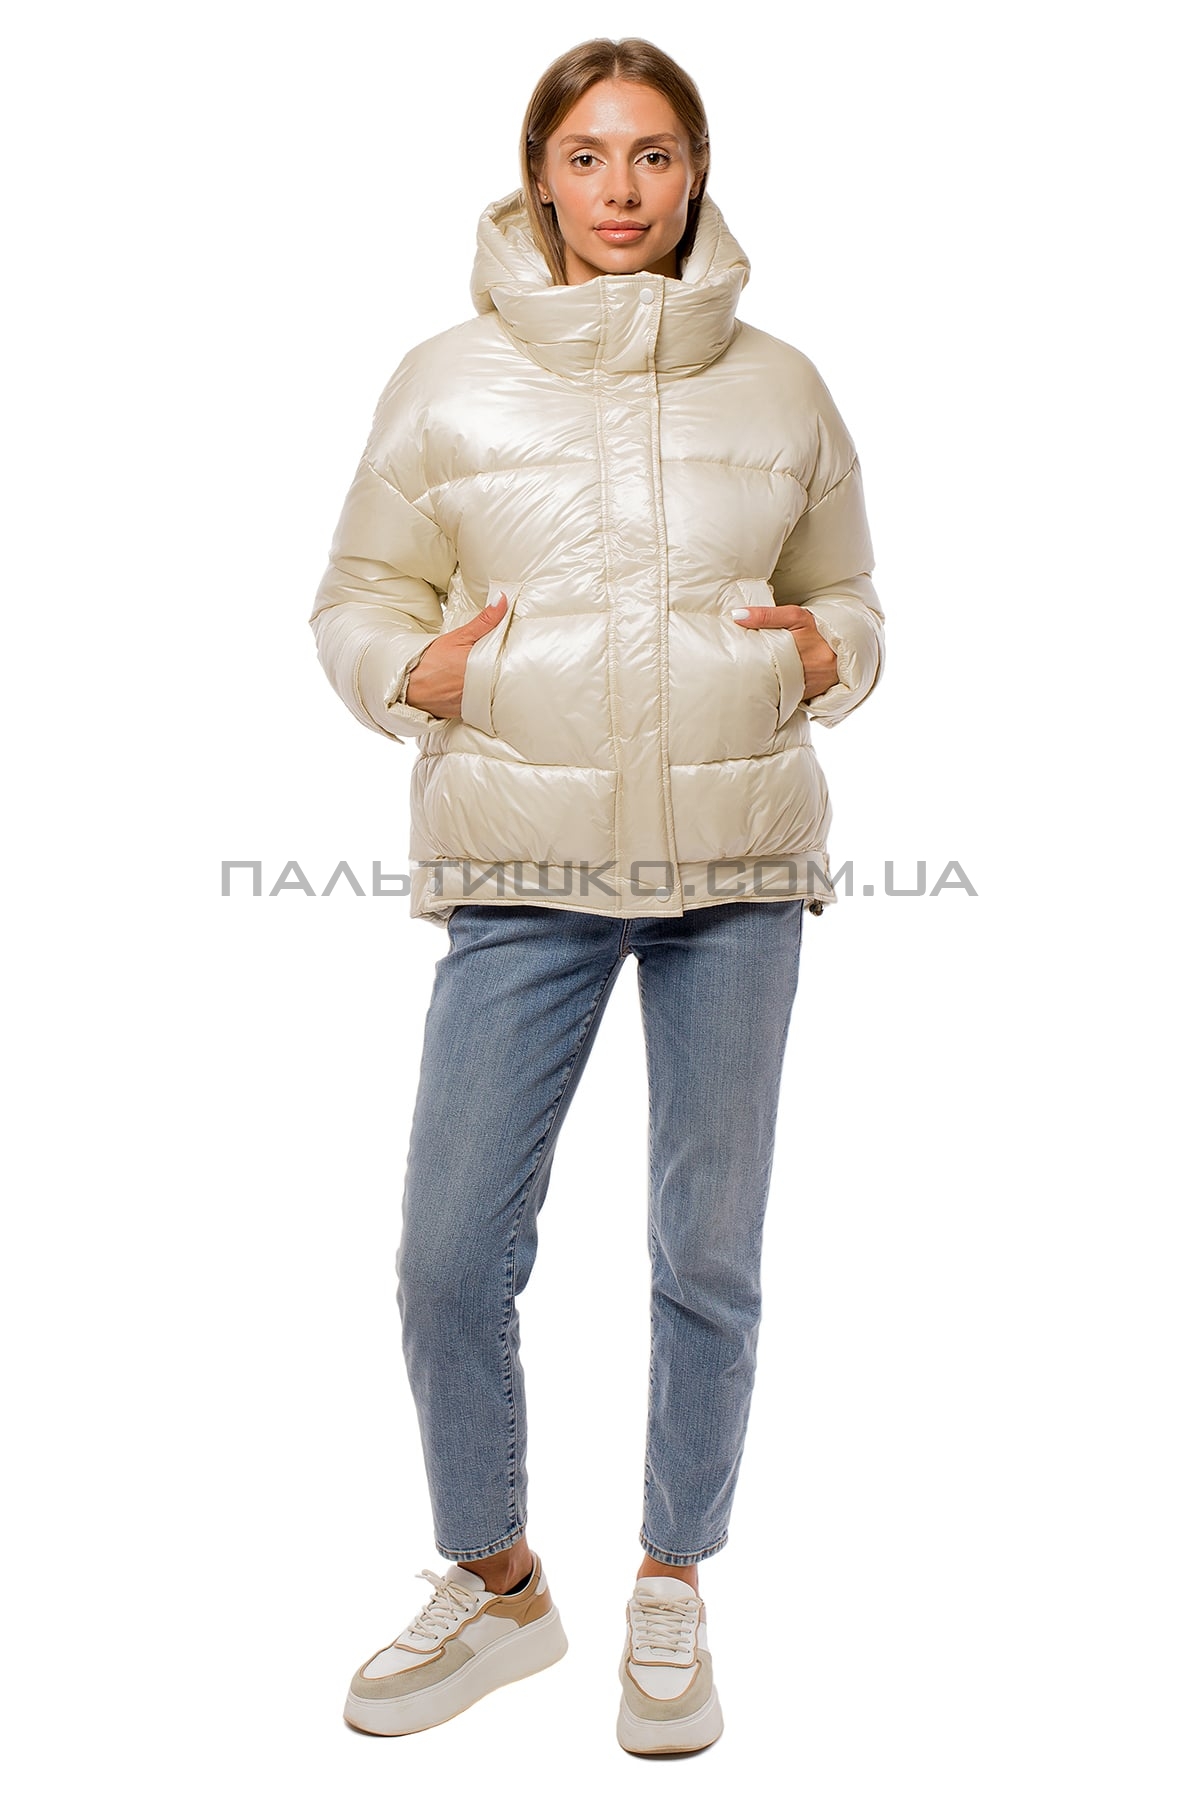  Жіноча коротка куртка перламутрова біла